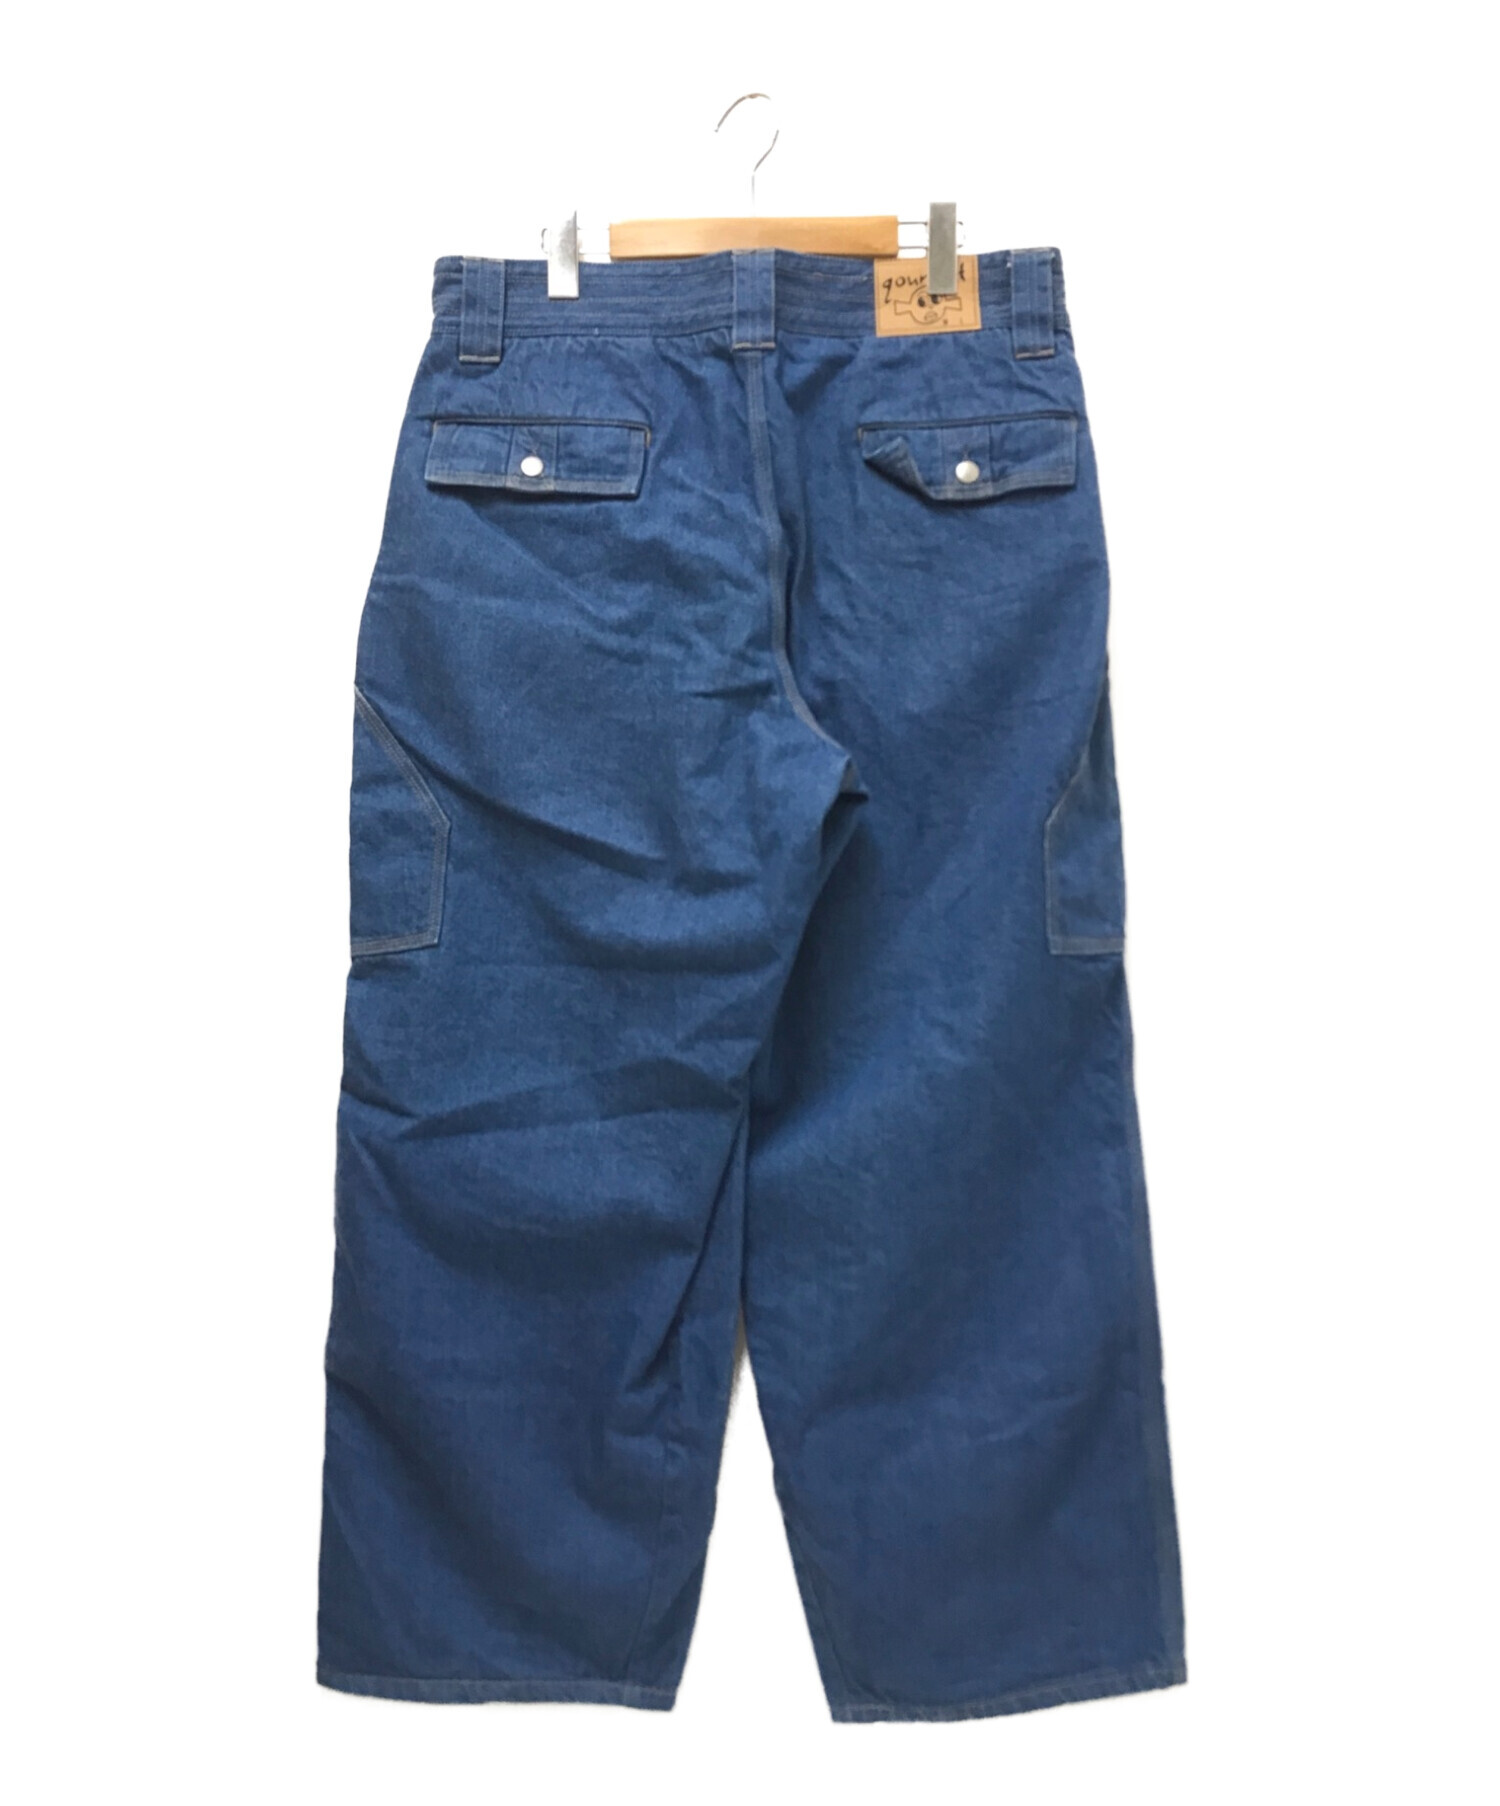 中古・古着通販】gourmet jeans (グルメジーンズ) TYPE2/BUSH デニム 